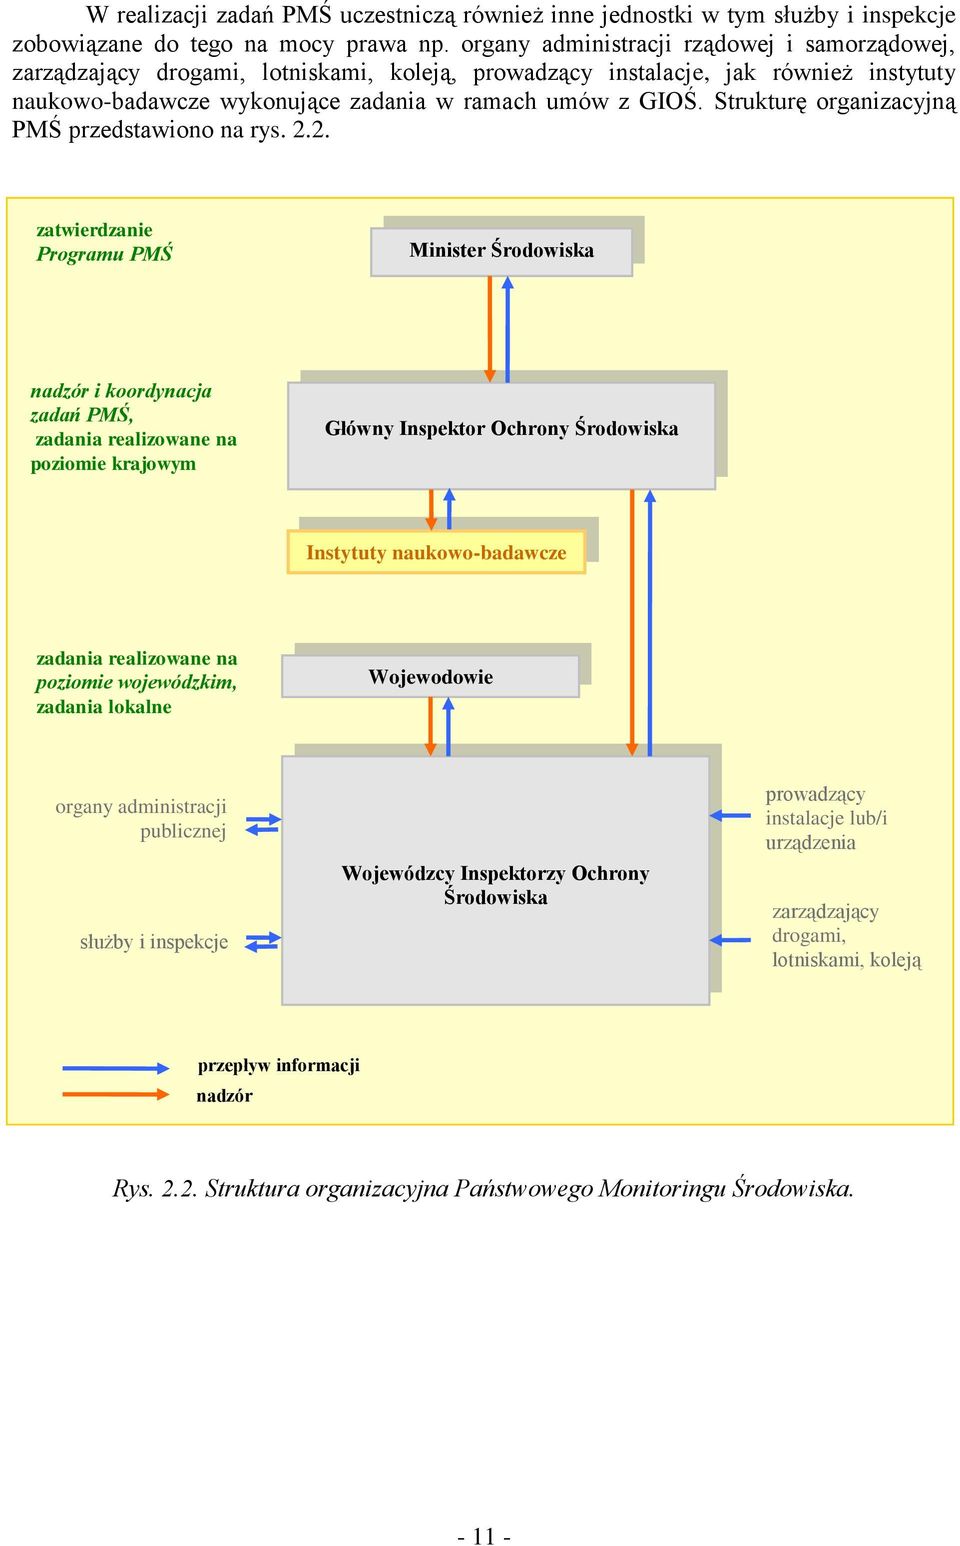 Strukturę organizacyjną PMŚ przedstawiono na rys. 2.